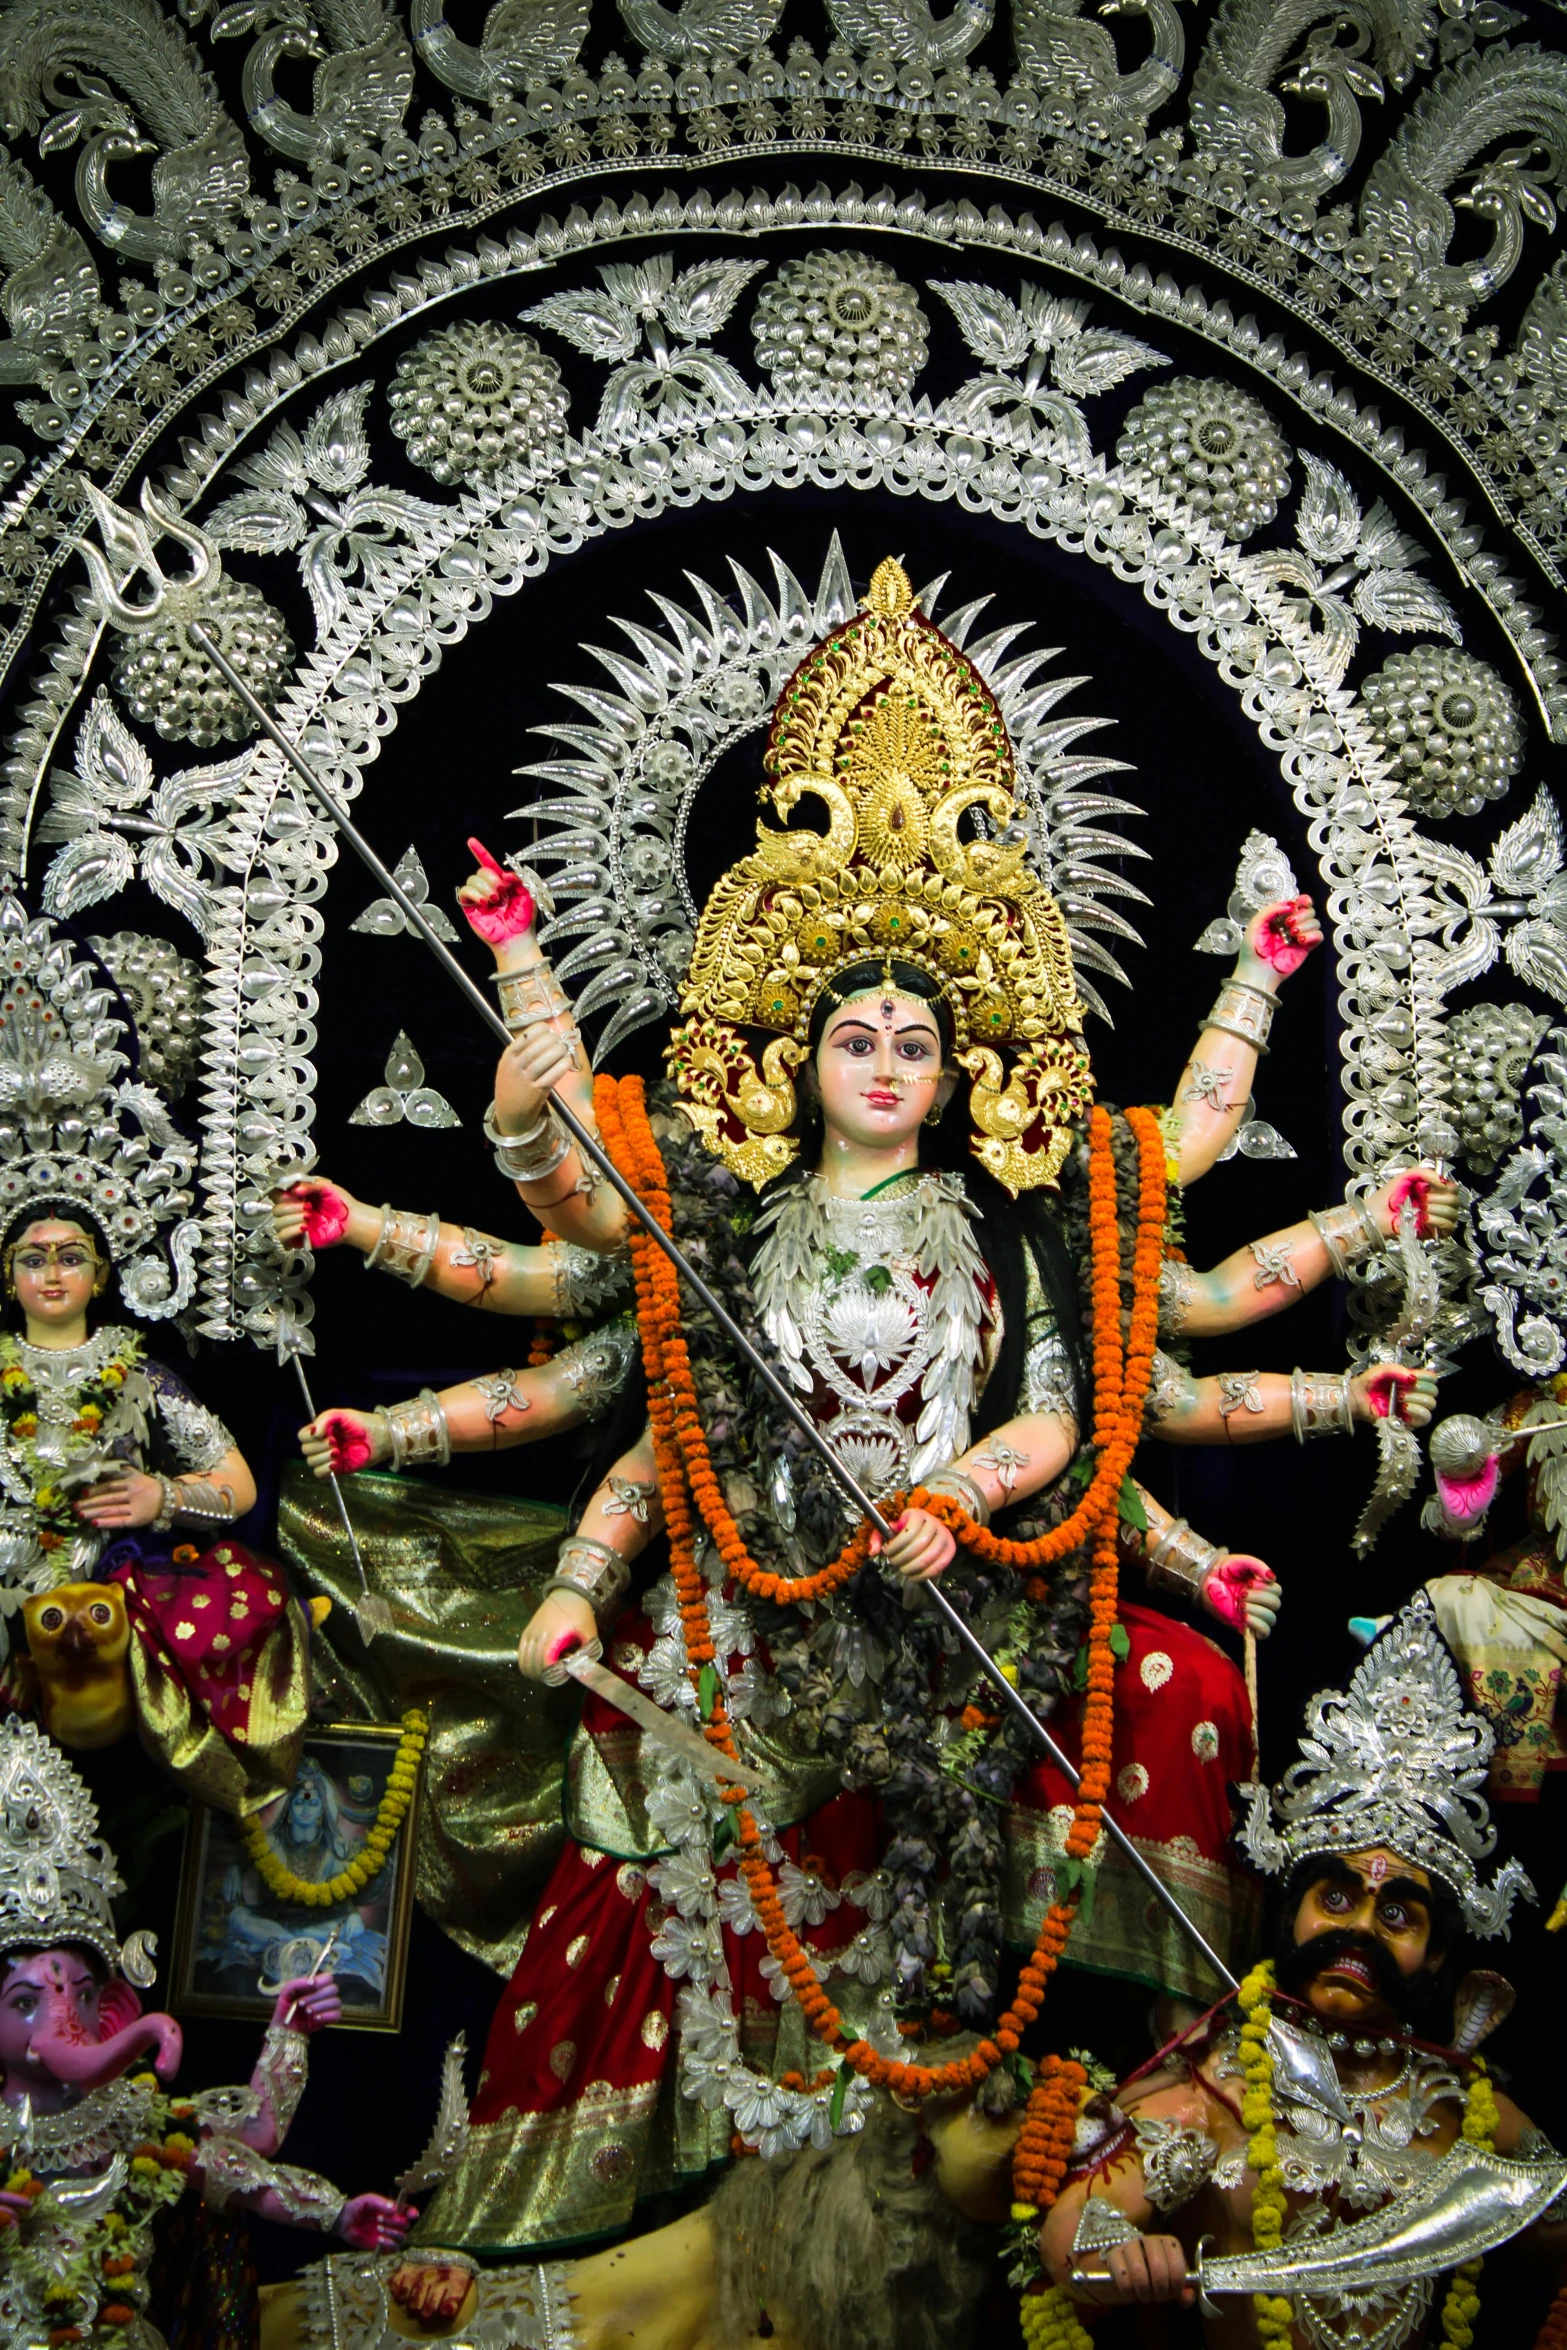 statues of deities in hindu garb on display